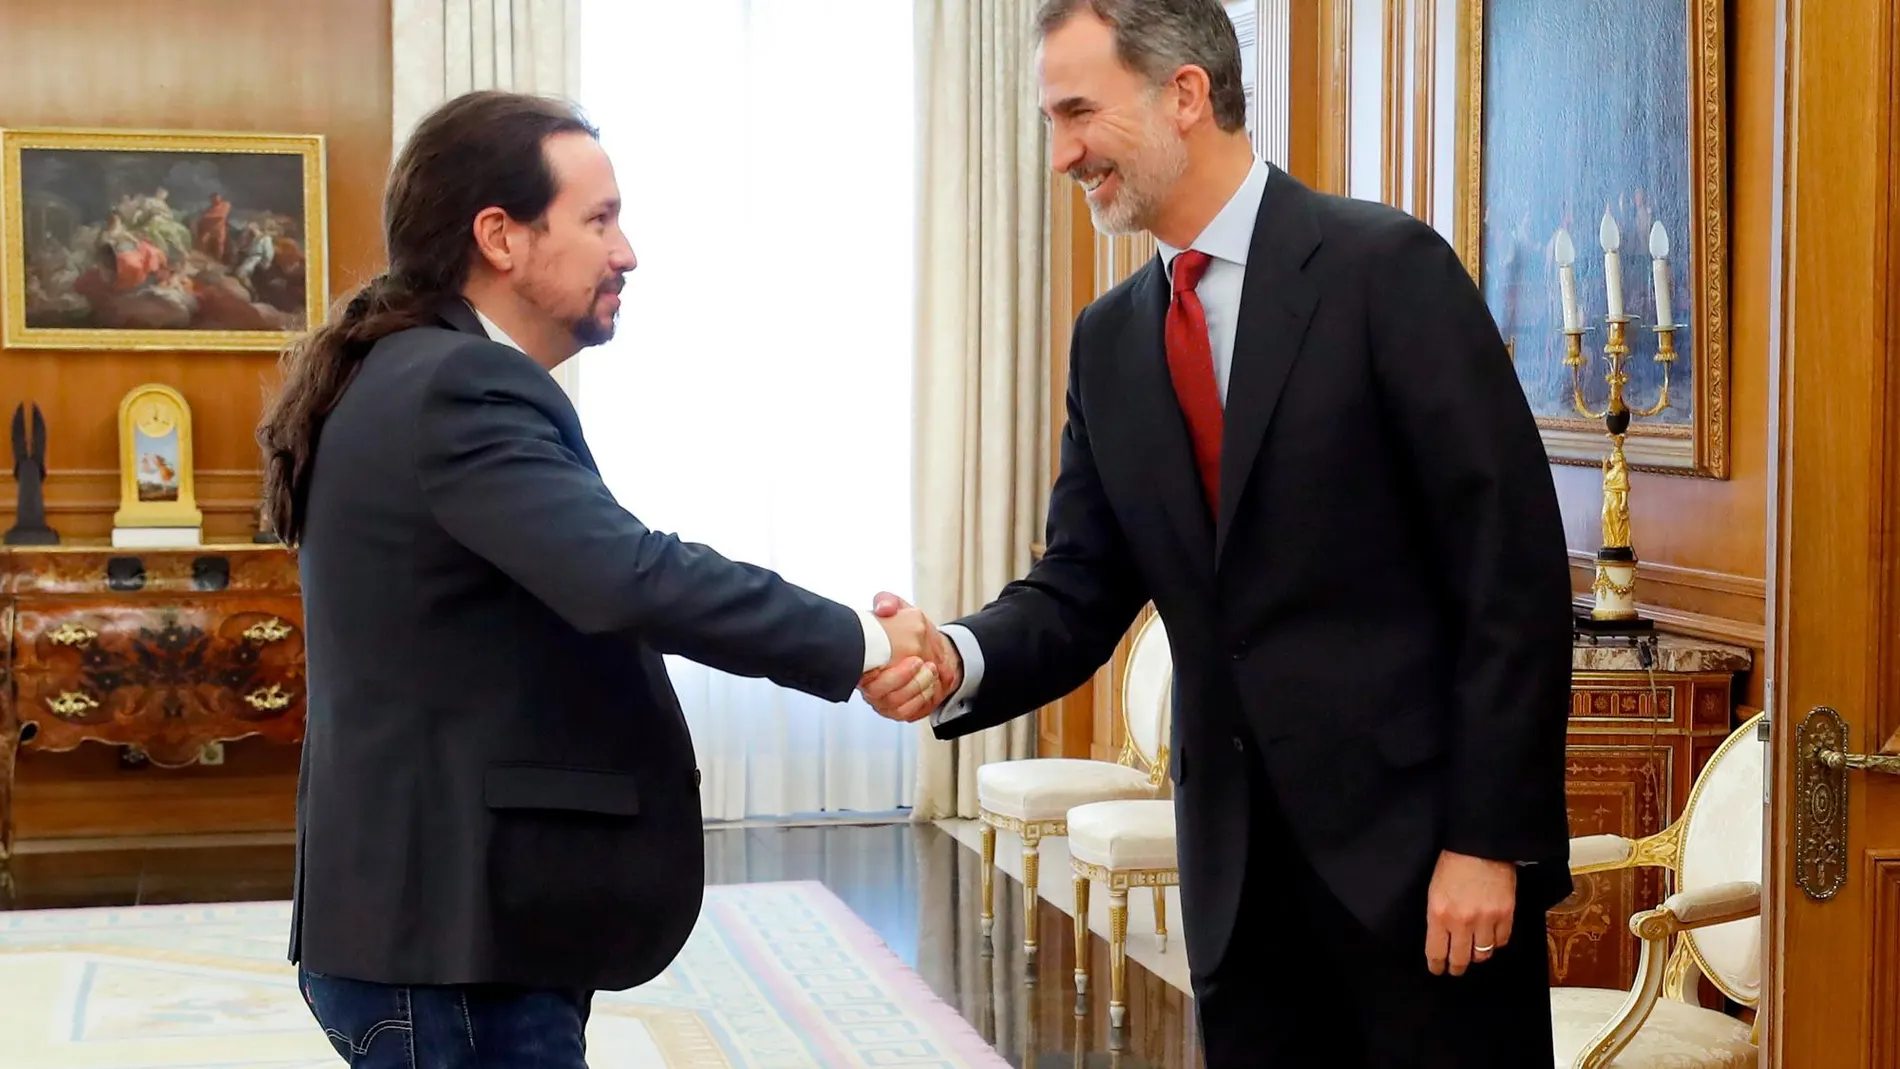 El rey Felipe VI saluda al líder de Podemos, Pablo Iglesias, en el Palacio de la Zarzuela. EFE/Chema Moya***POOL***